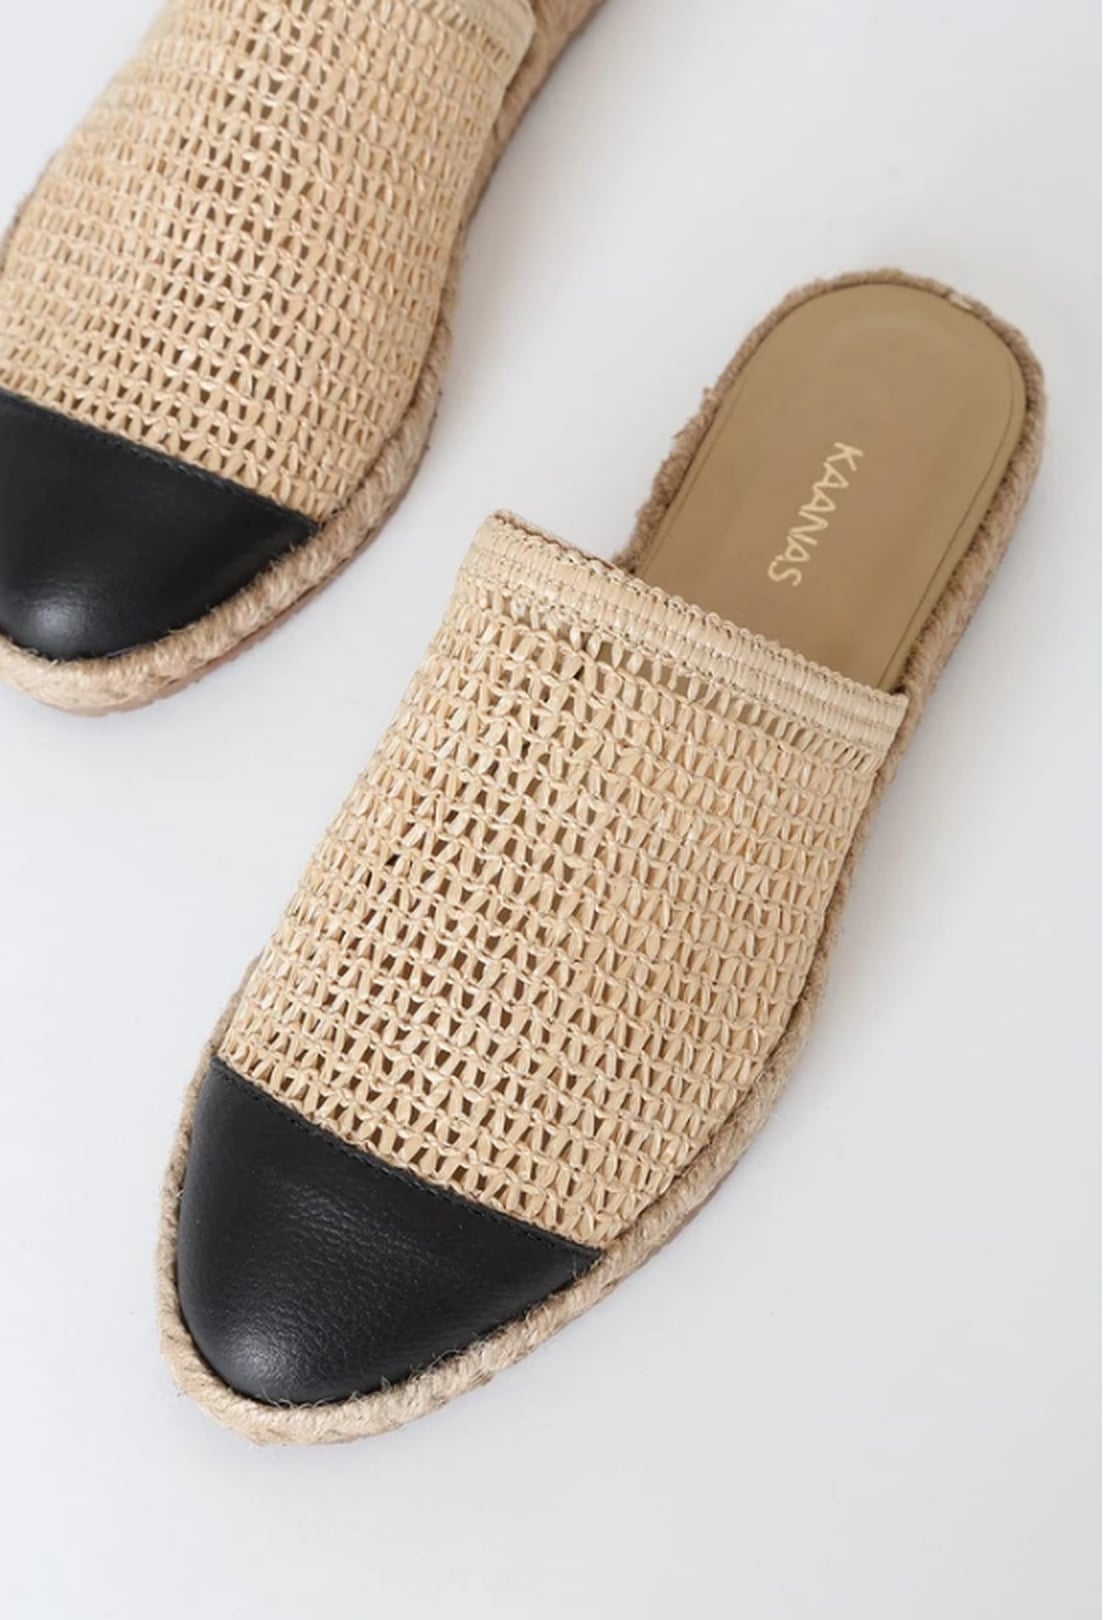 Summer Sandal Trends 2020 | POPSUGAR Fashion